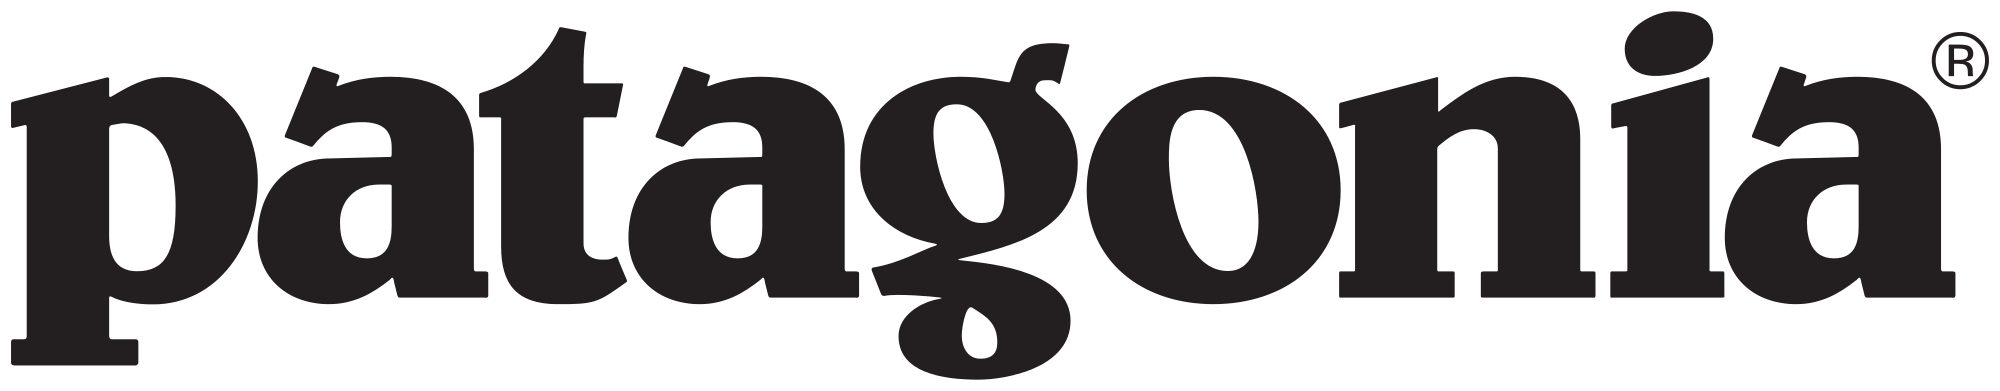 Patagonia_(Unternehmen)_logo.svg.png